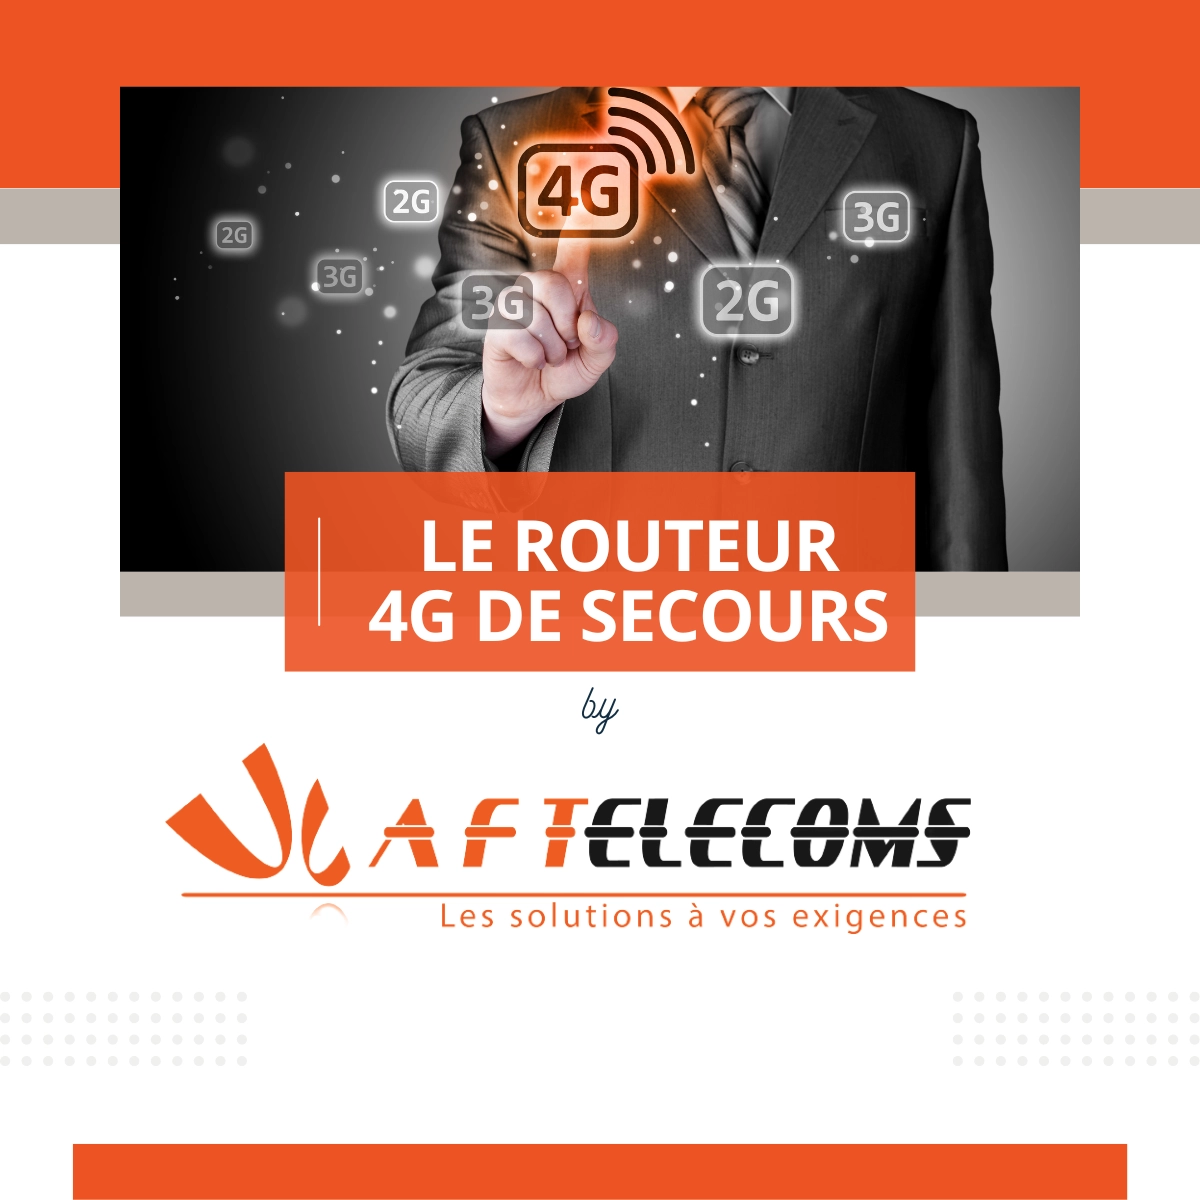 Le routeur 4G de secours by AF TELECOMS - Expert en téléphonie, télécoms, vidéosurveillance dans le Calvados